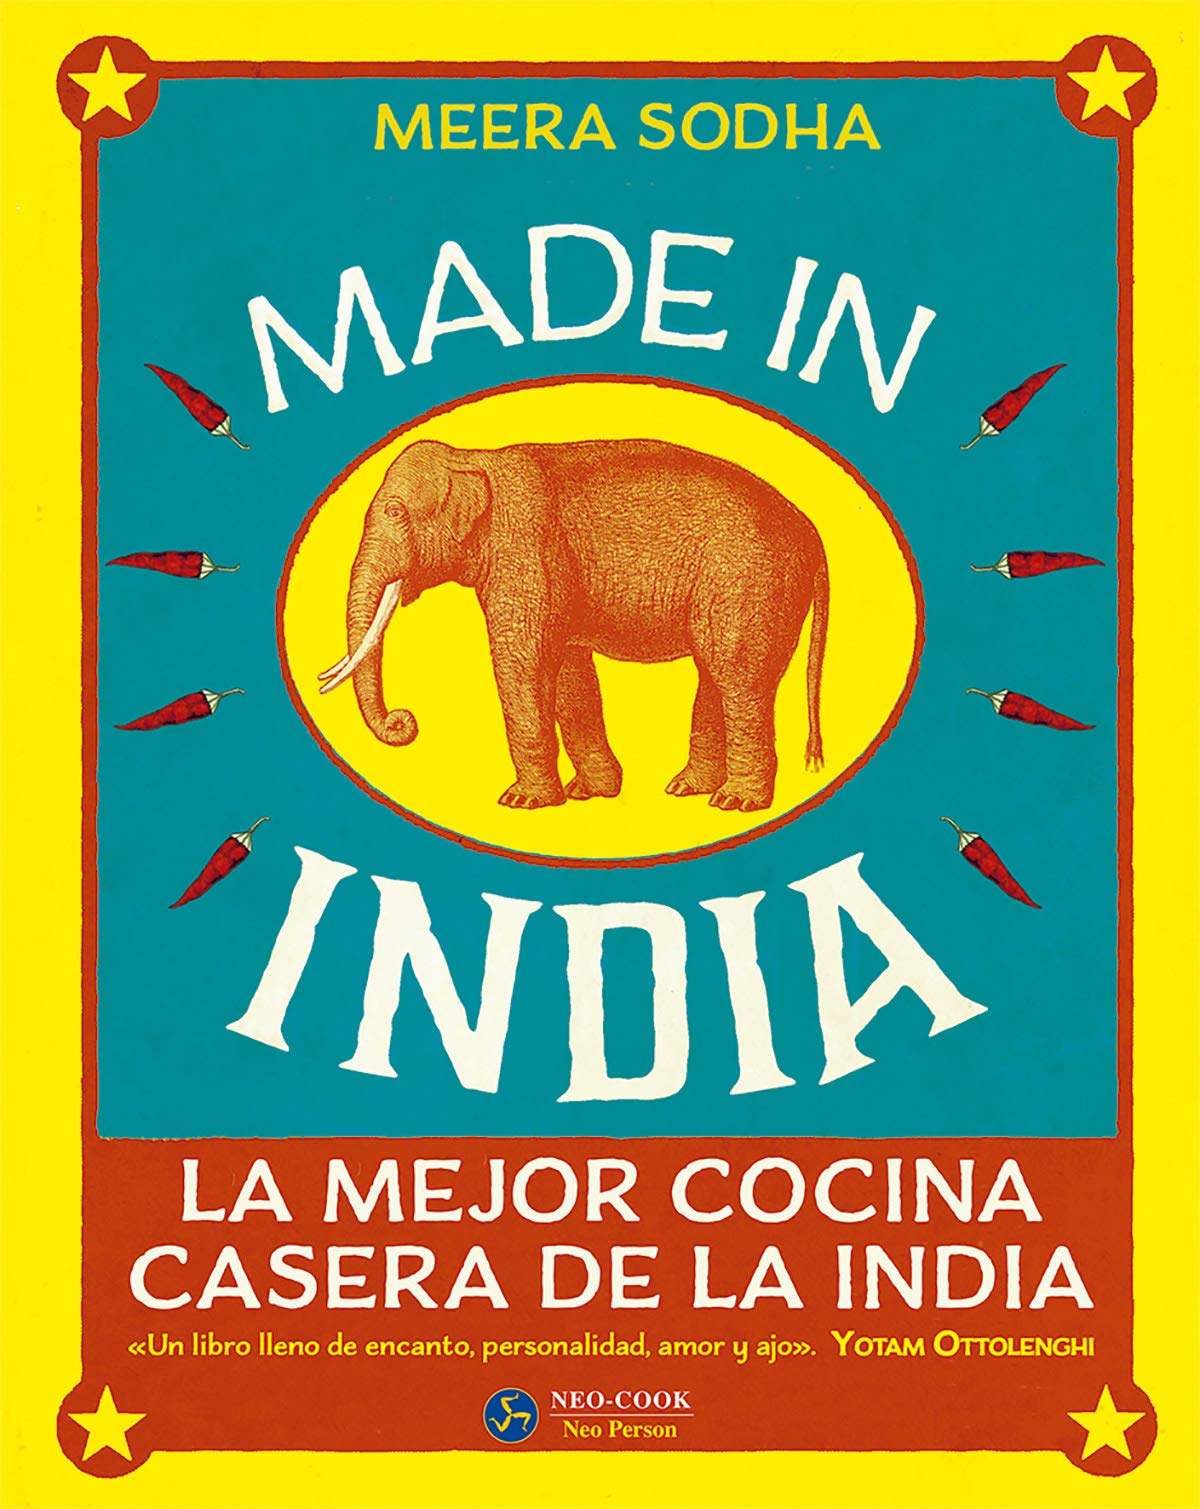  Libro - Made in india. La mejor cocina casera de la india - edición especial - libro curioso